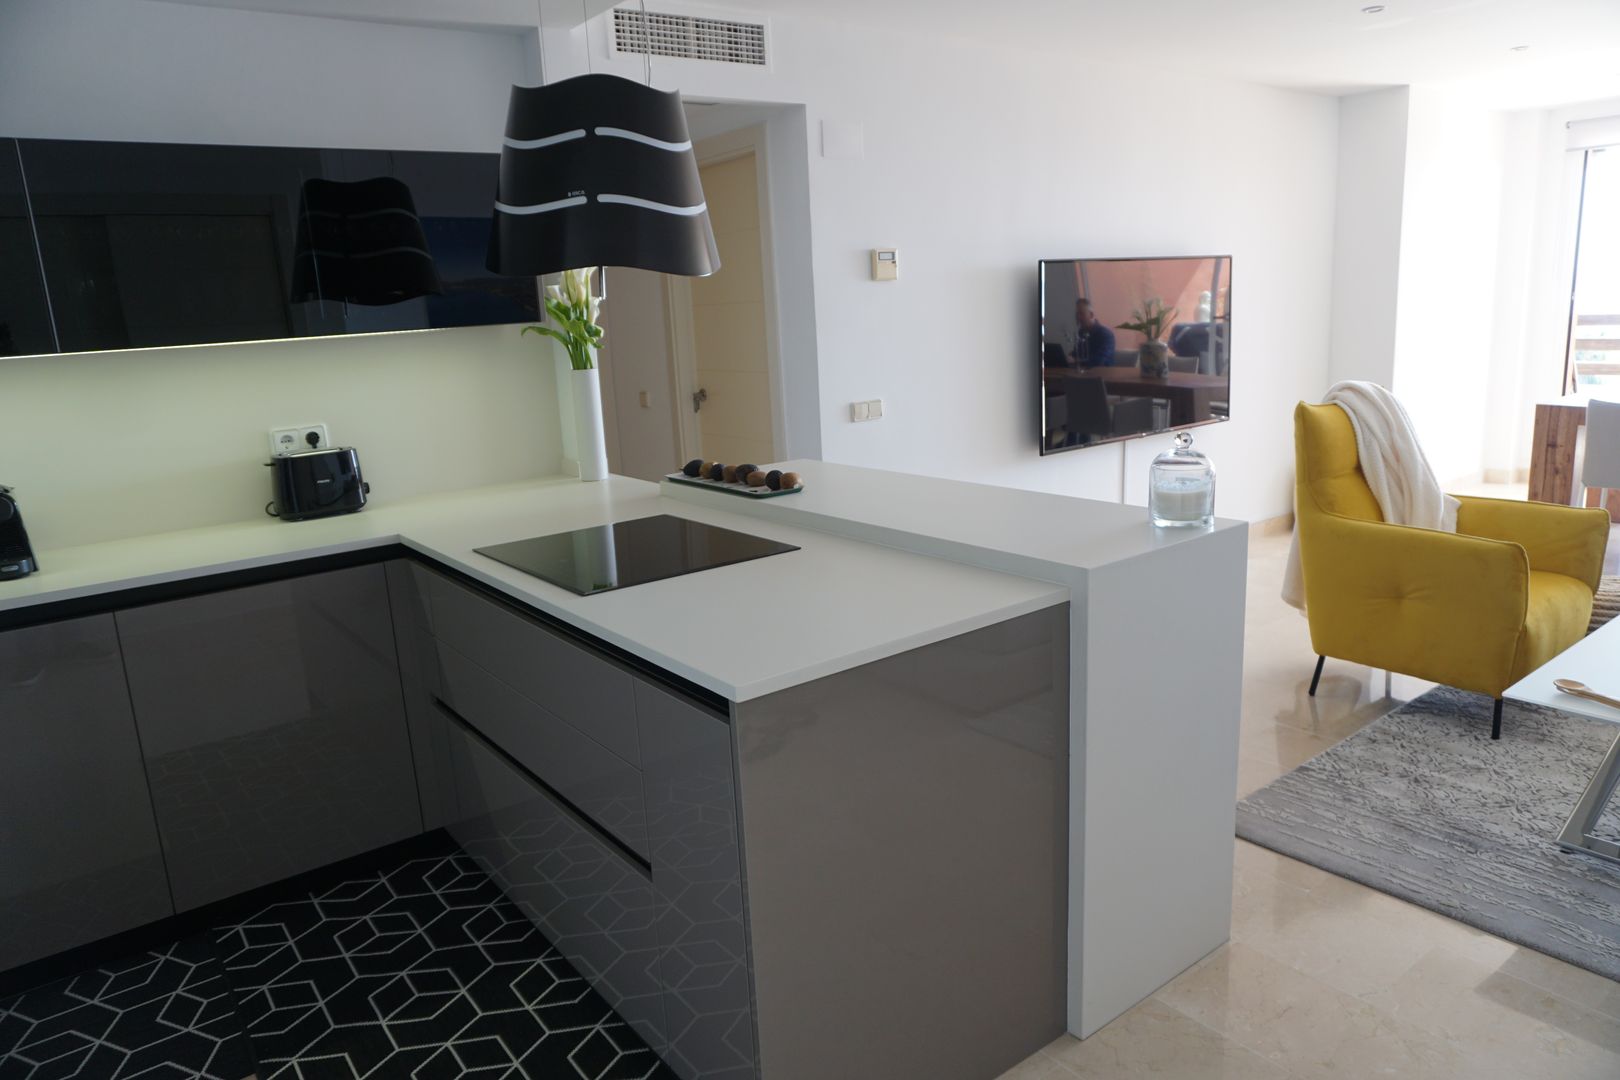 Proyecto e instalación de cocina moderna abierta al salón en Málaga, Decodan - Estudio de cocinas y armarios en Estepona y Marbella Decodan - Estudio de cocinas y armarios en Estepona y Marbella Small kitchens